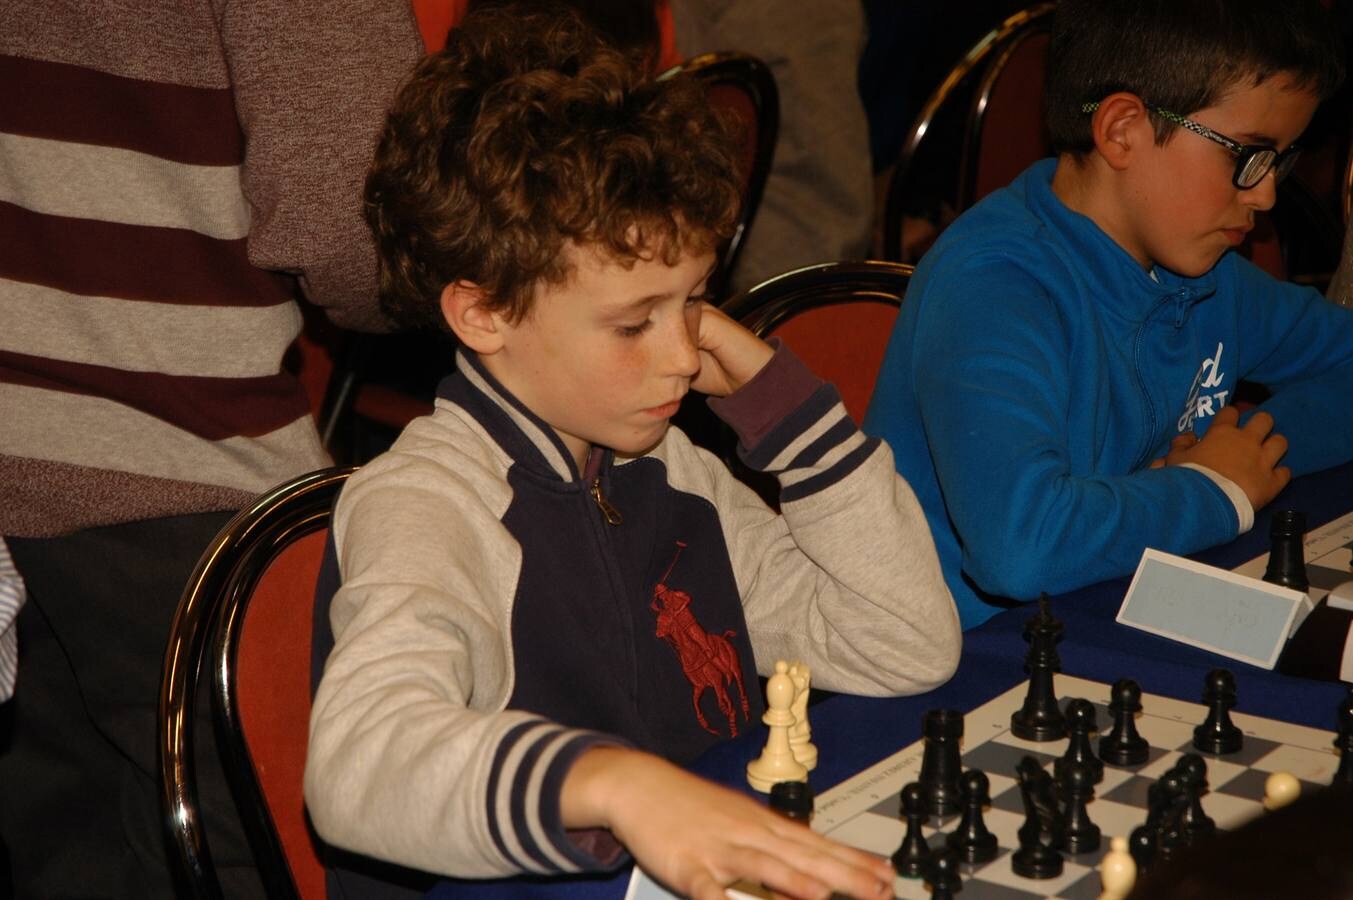 Se ha celebrado el XIV abierto de ajedrez Ribera del Ebro que organiza el Club Ajedrez de Alfaro.Esta es la segunda jornada del torneo y se ha disputado este sábado por la tarde en Cervera del Río Alhama. Al mismo tiempo ha habido simultáneas de ajedrez con el campeón riojano sub18, el cerverano Jorge Ruiz.